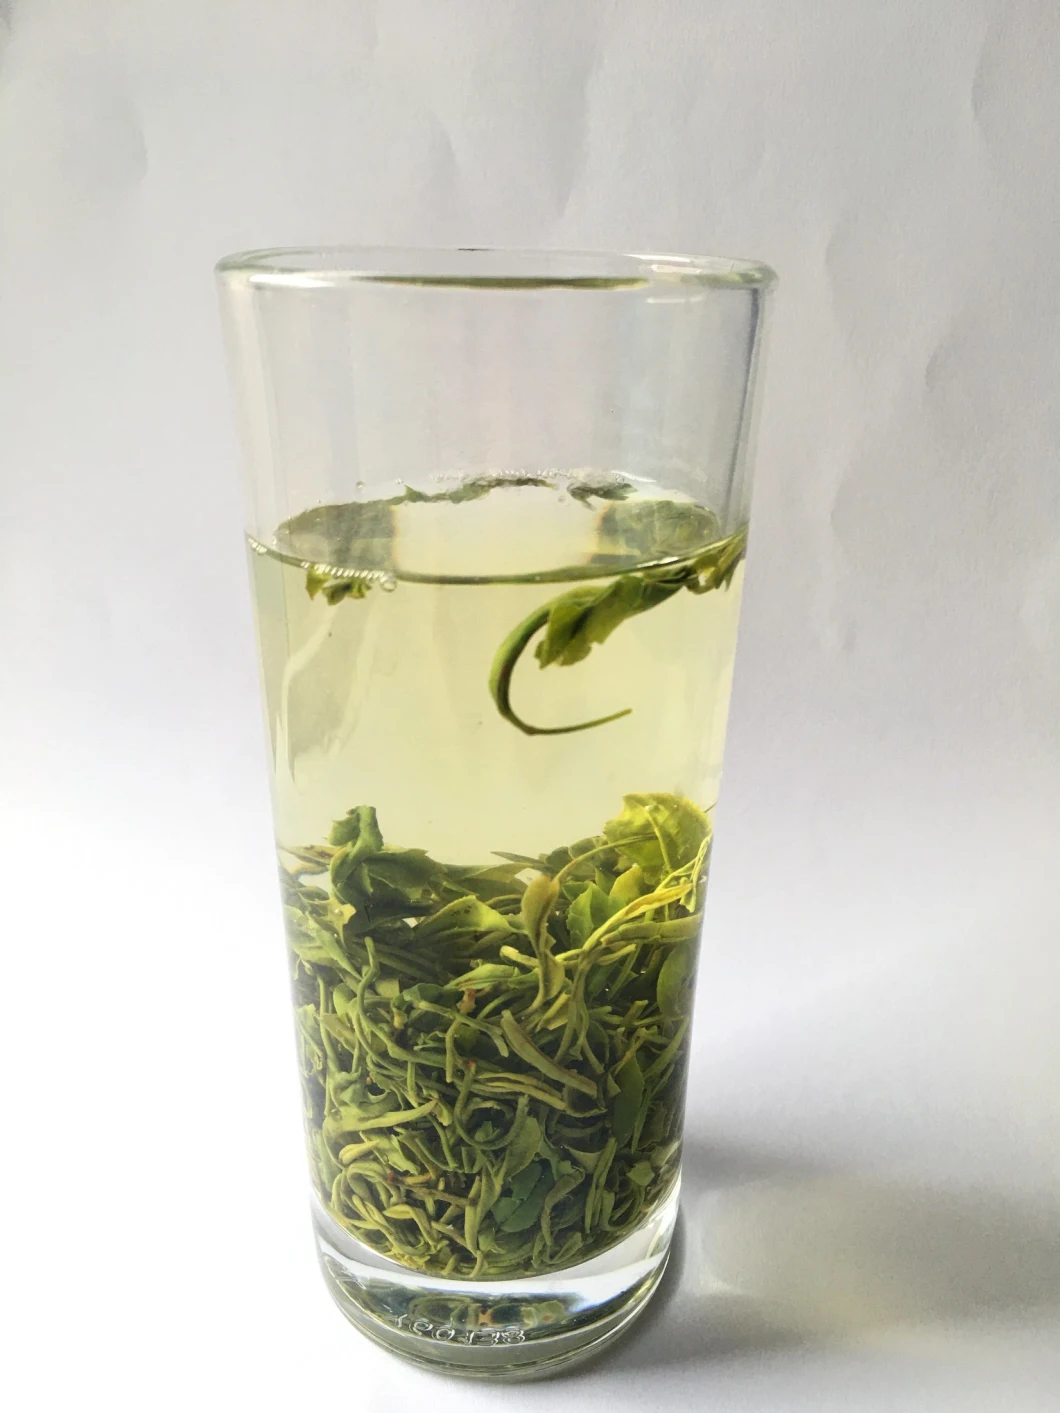 Organic Chinese Loose Leaf Tea Anji White Tea